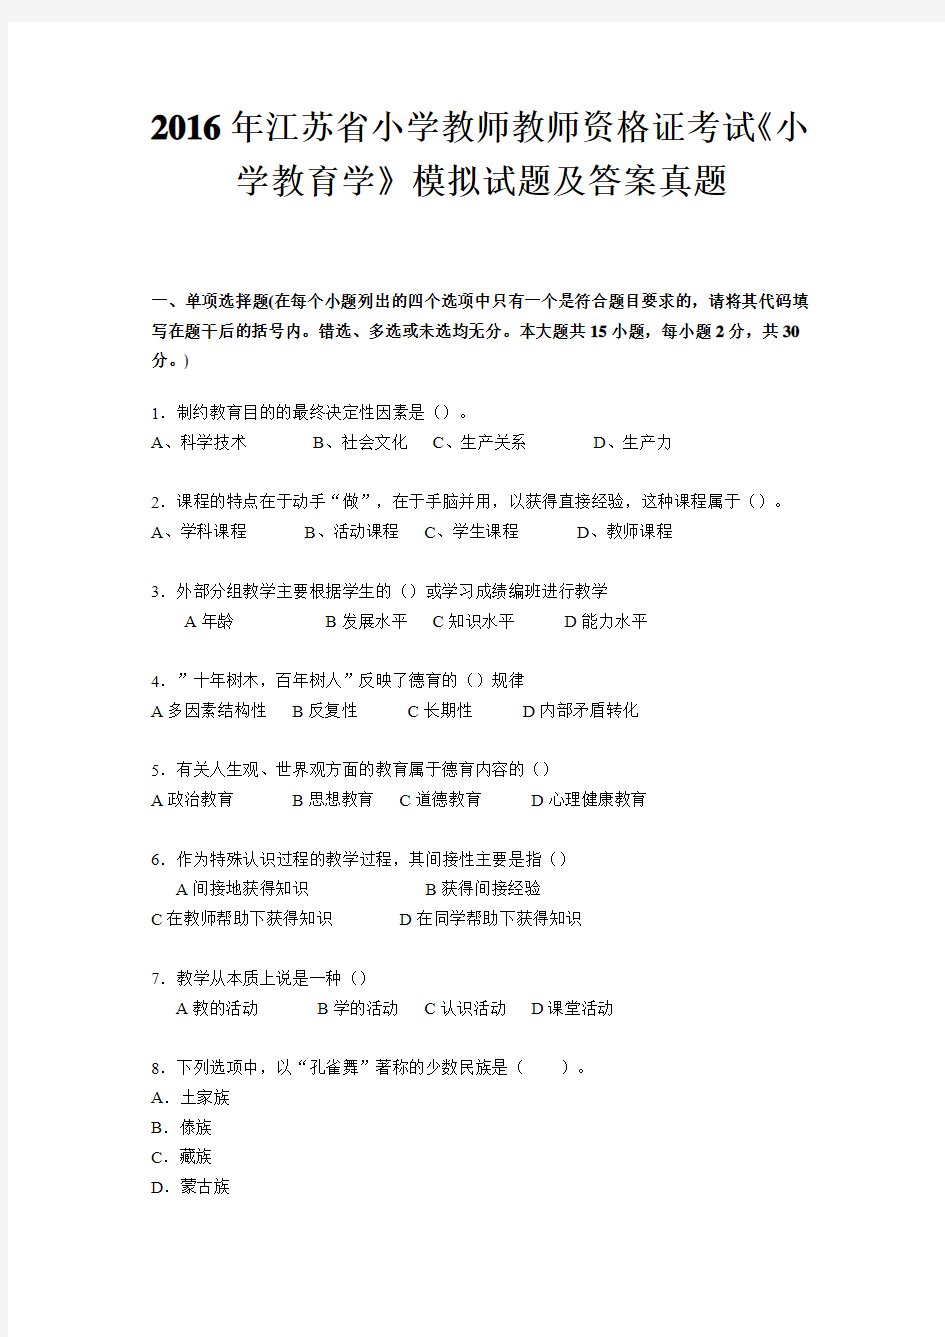 2016年江苏省小学教师教师资格证考试《小学教育学》模拟试题及答案真题